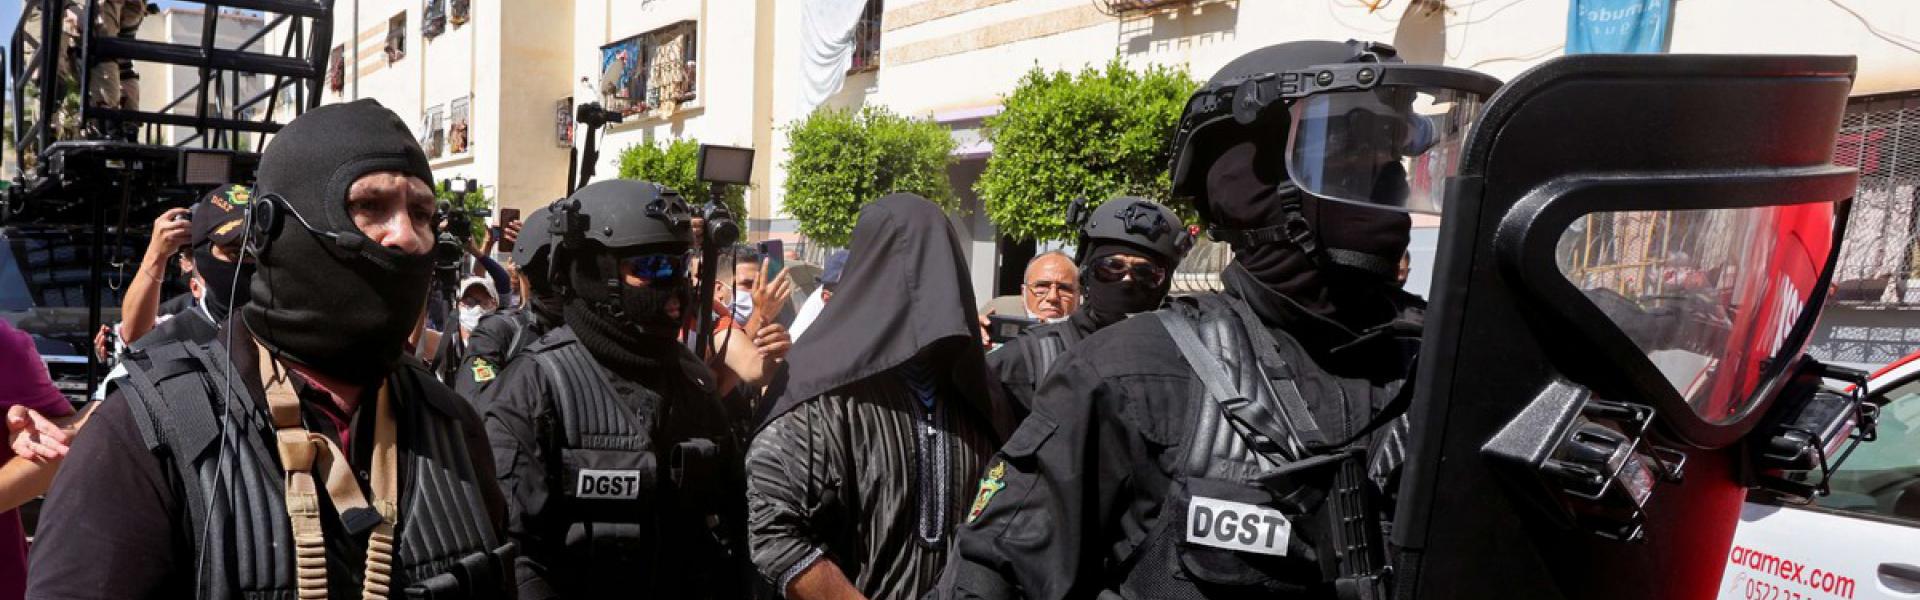 المغرب راكم خبرة طويلة في مجال العمل الاستخباري ومكافحة الإرهاب